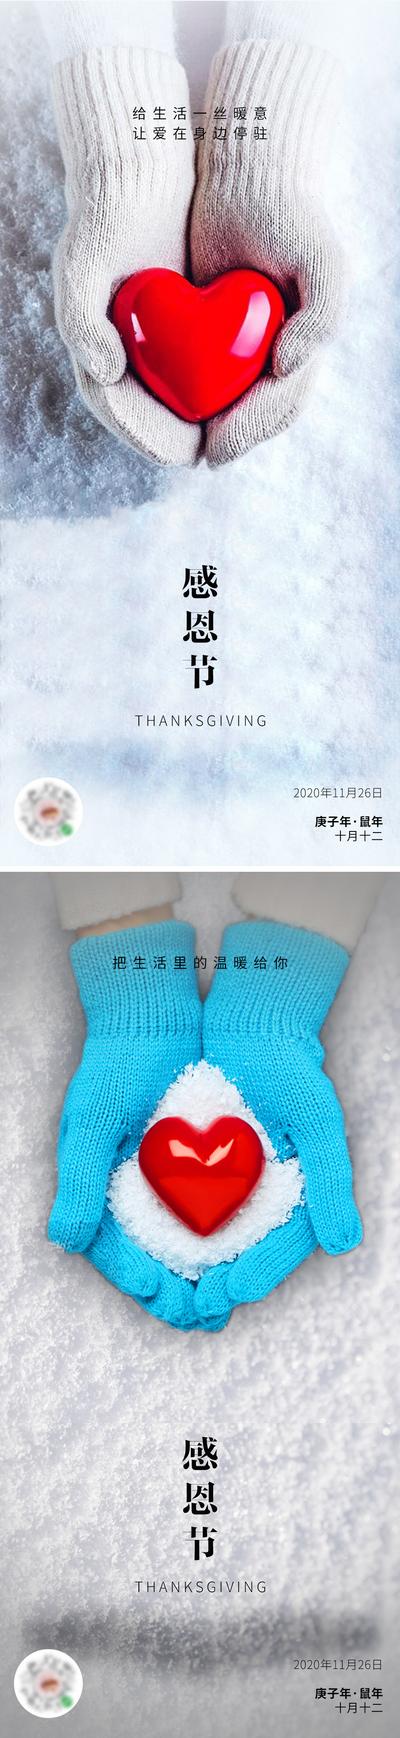 南门网 广告 海报 节日 感恩节 系列 爱心 手 冬季 手套 西方 雪